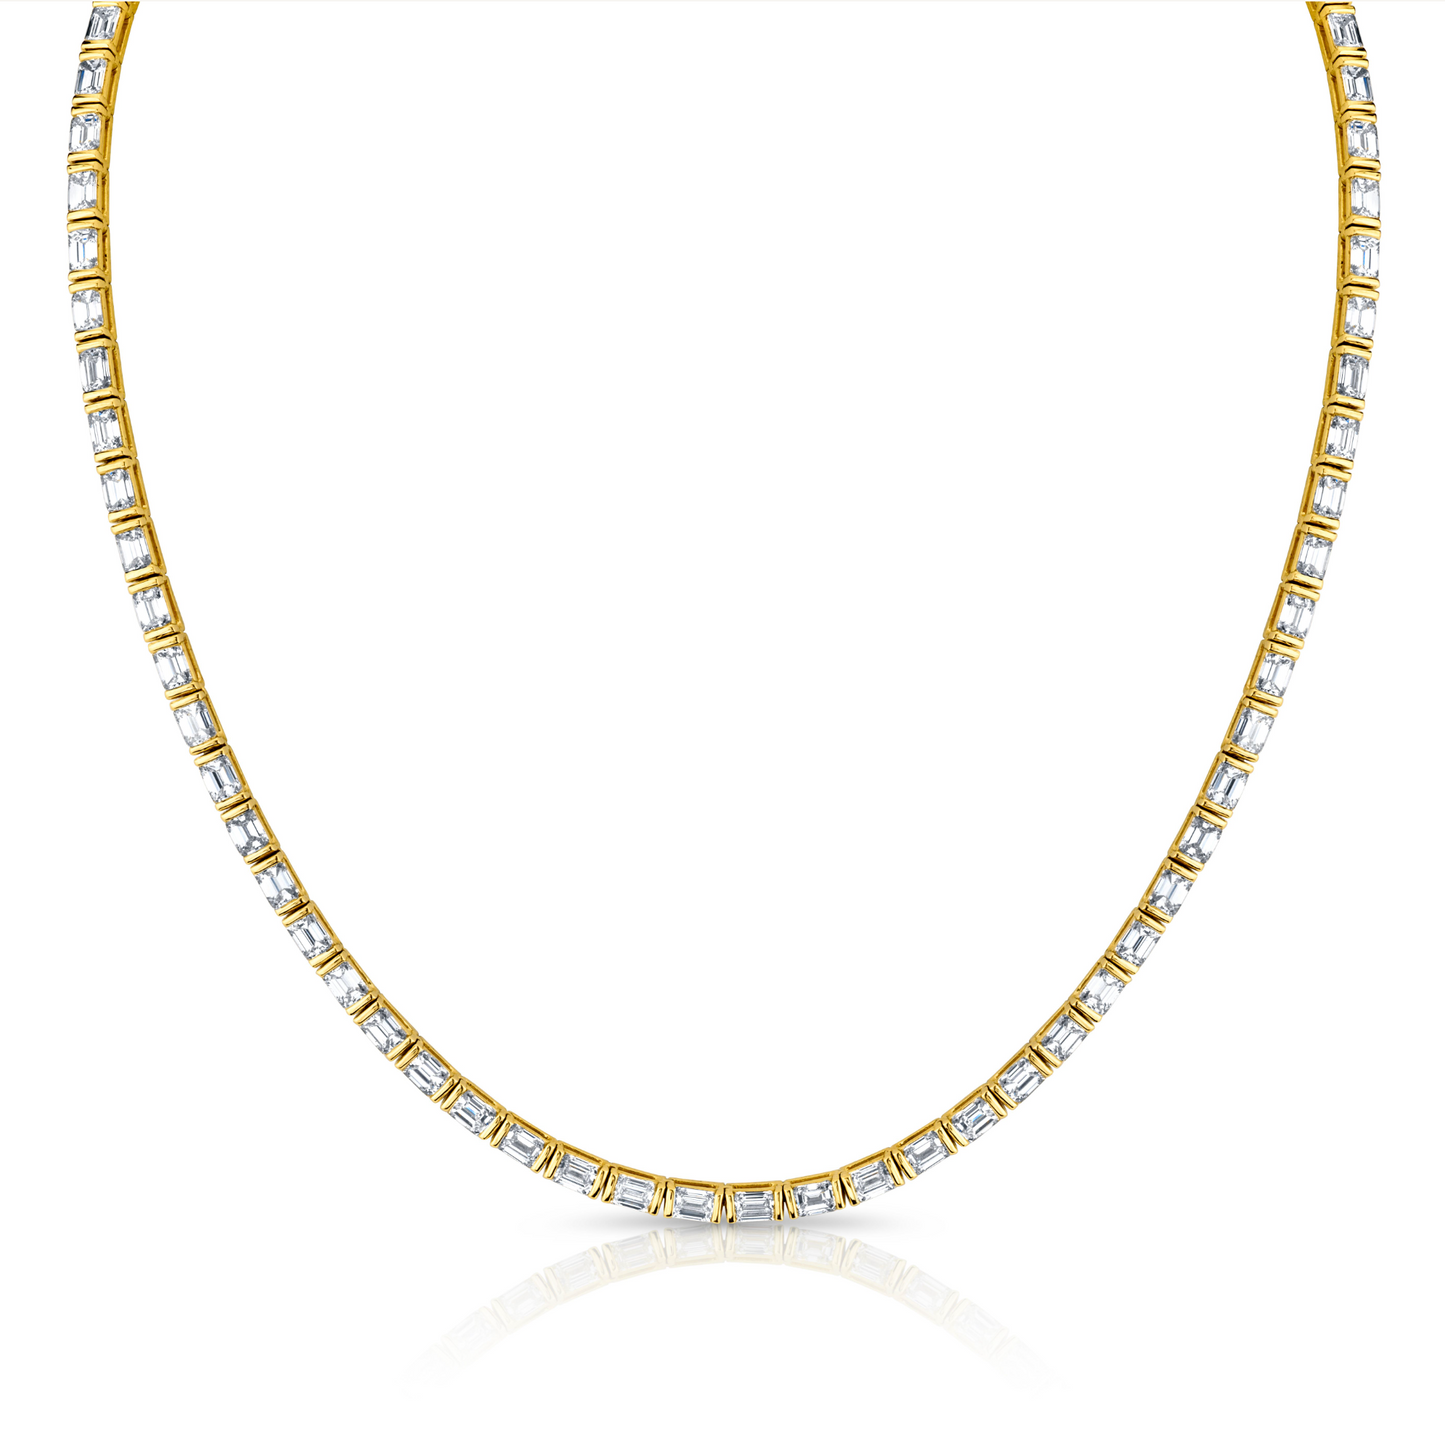 15.50 Carat Diamond Emerald Cut Necklace